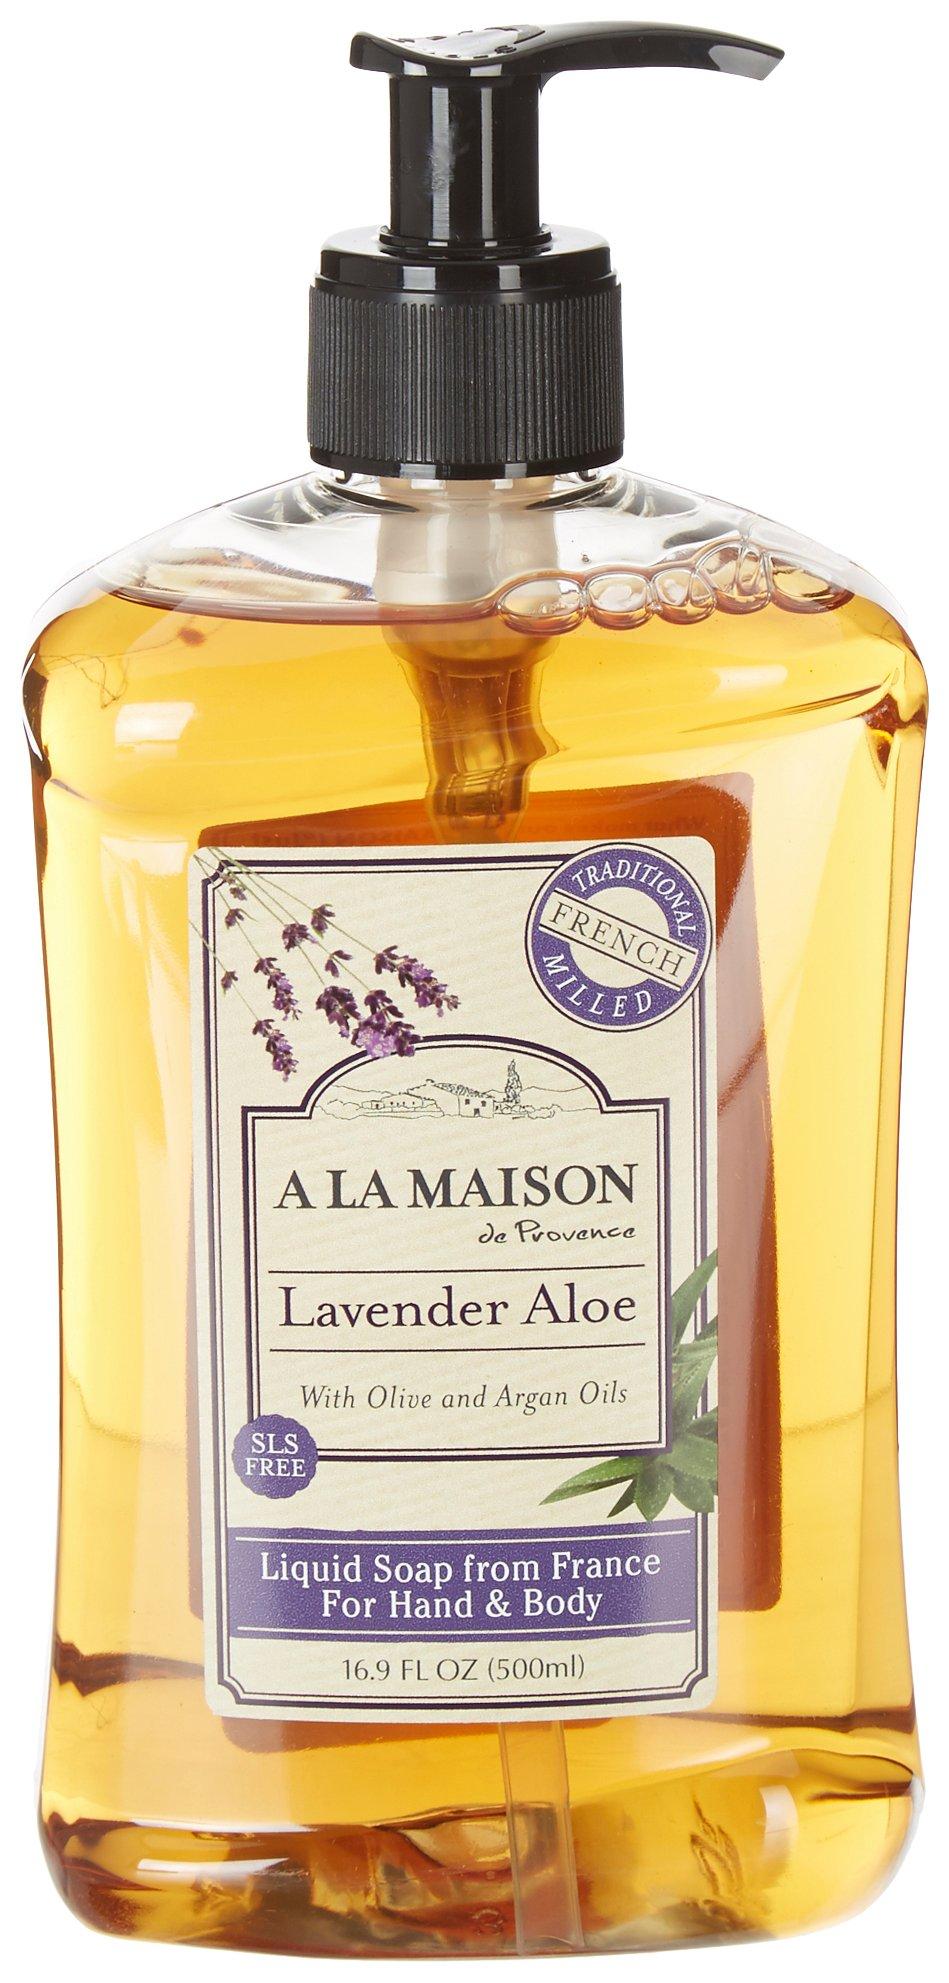 A La Maison Lavender Aloe Hand & Body Liquid Soap